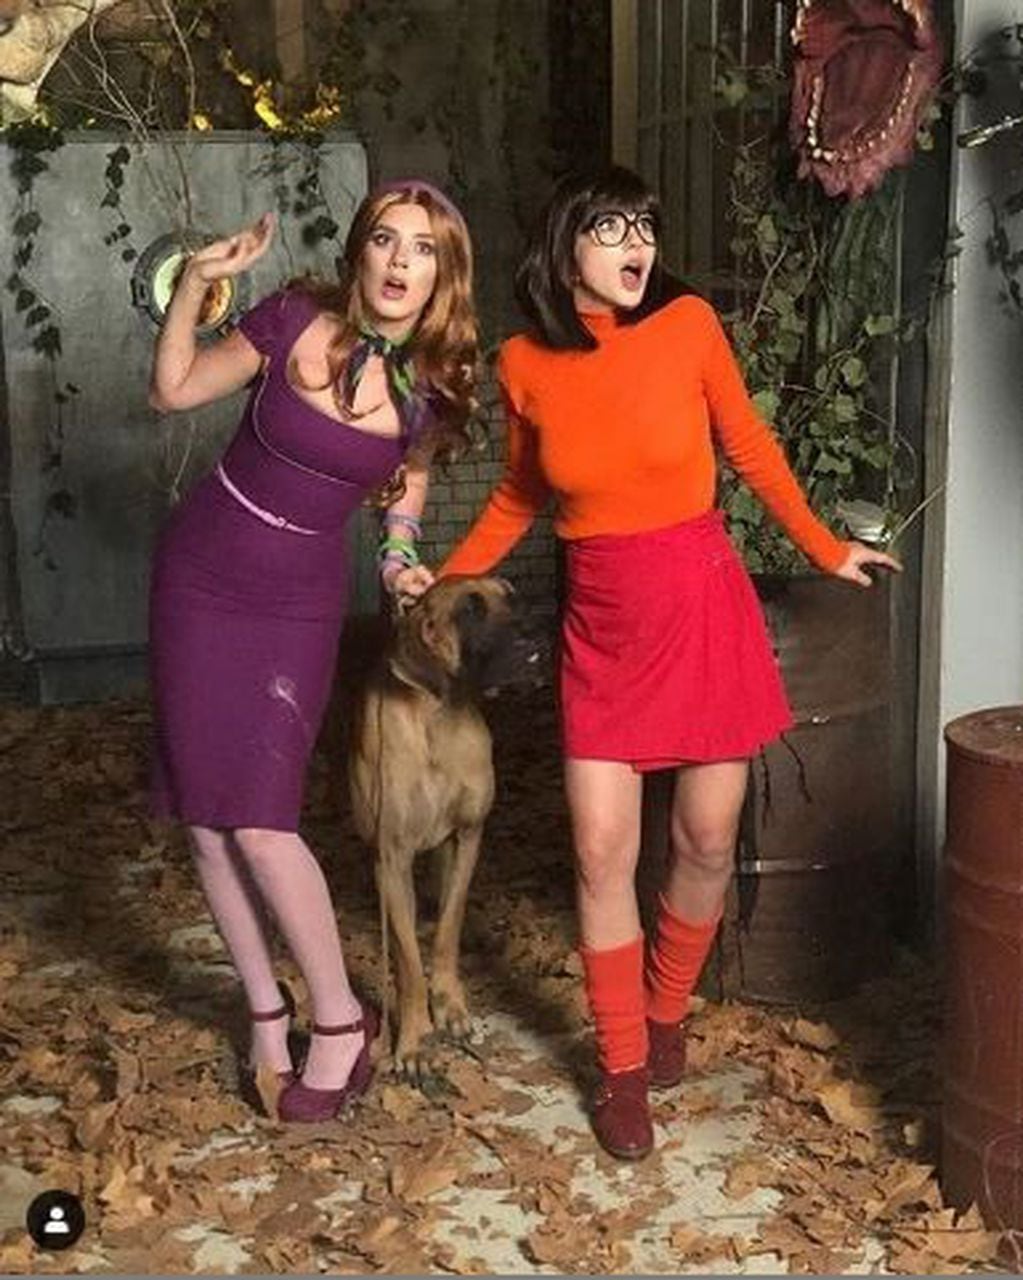 Delfi Chaves y la China Suárez se vistieron como personajes de Scooby Doo para la tapa de la revista Miradas de junio.